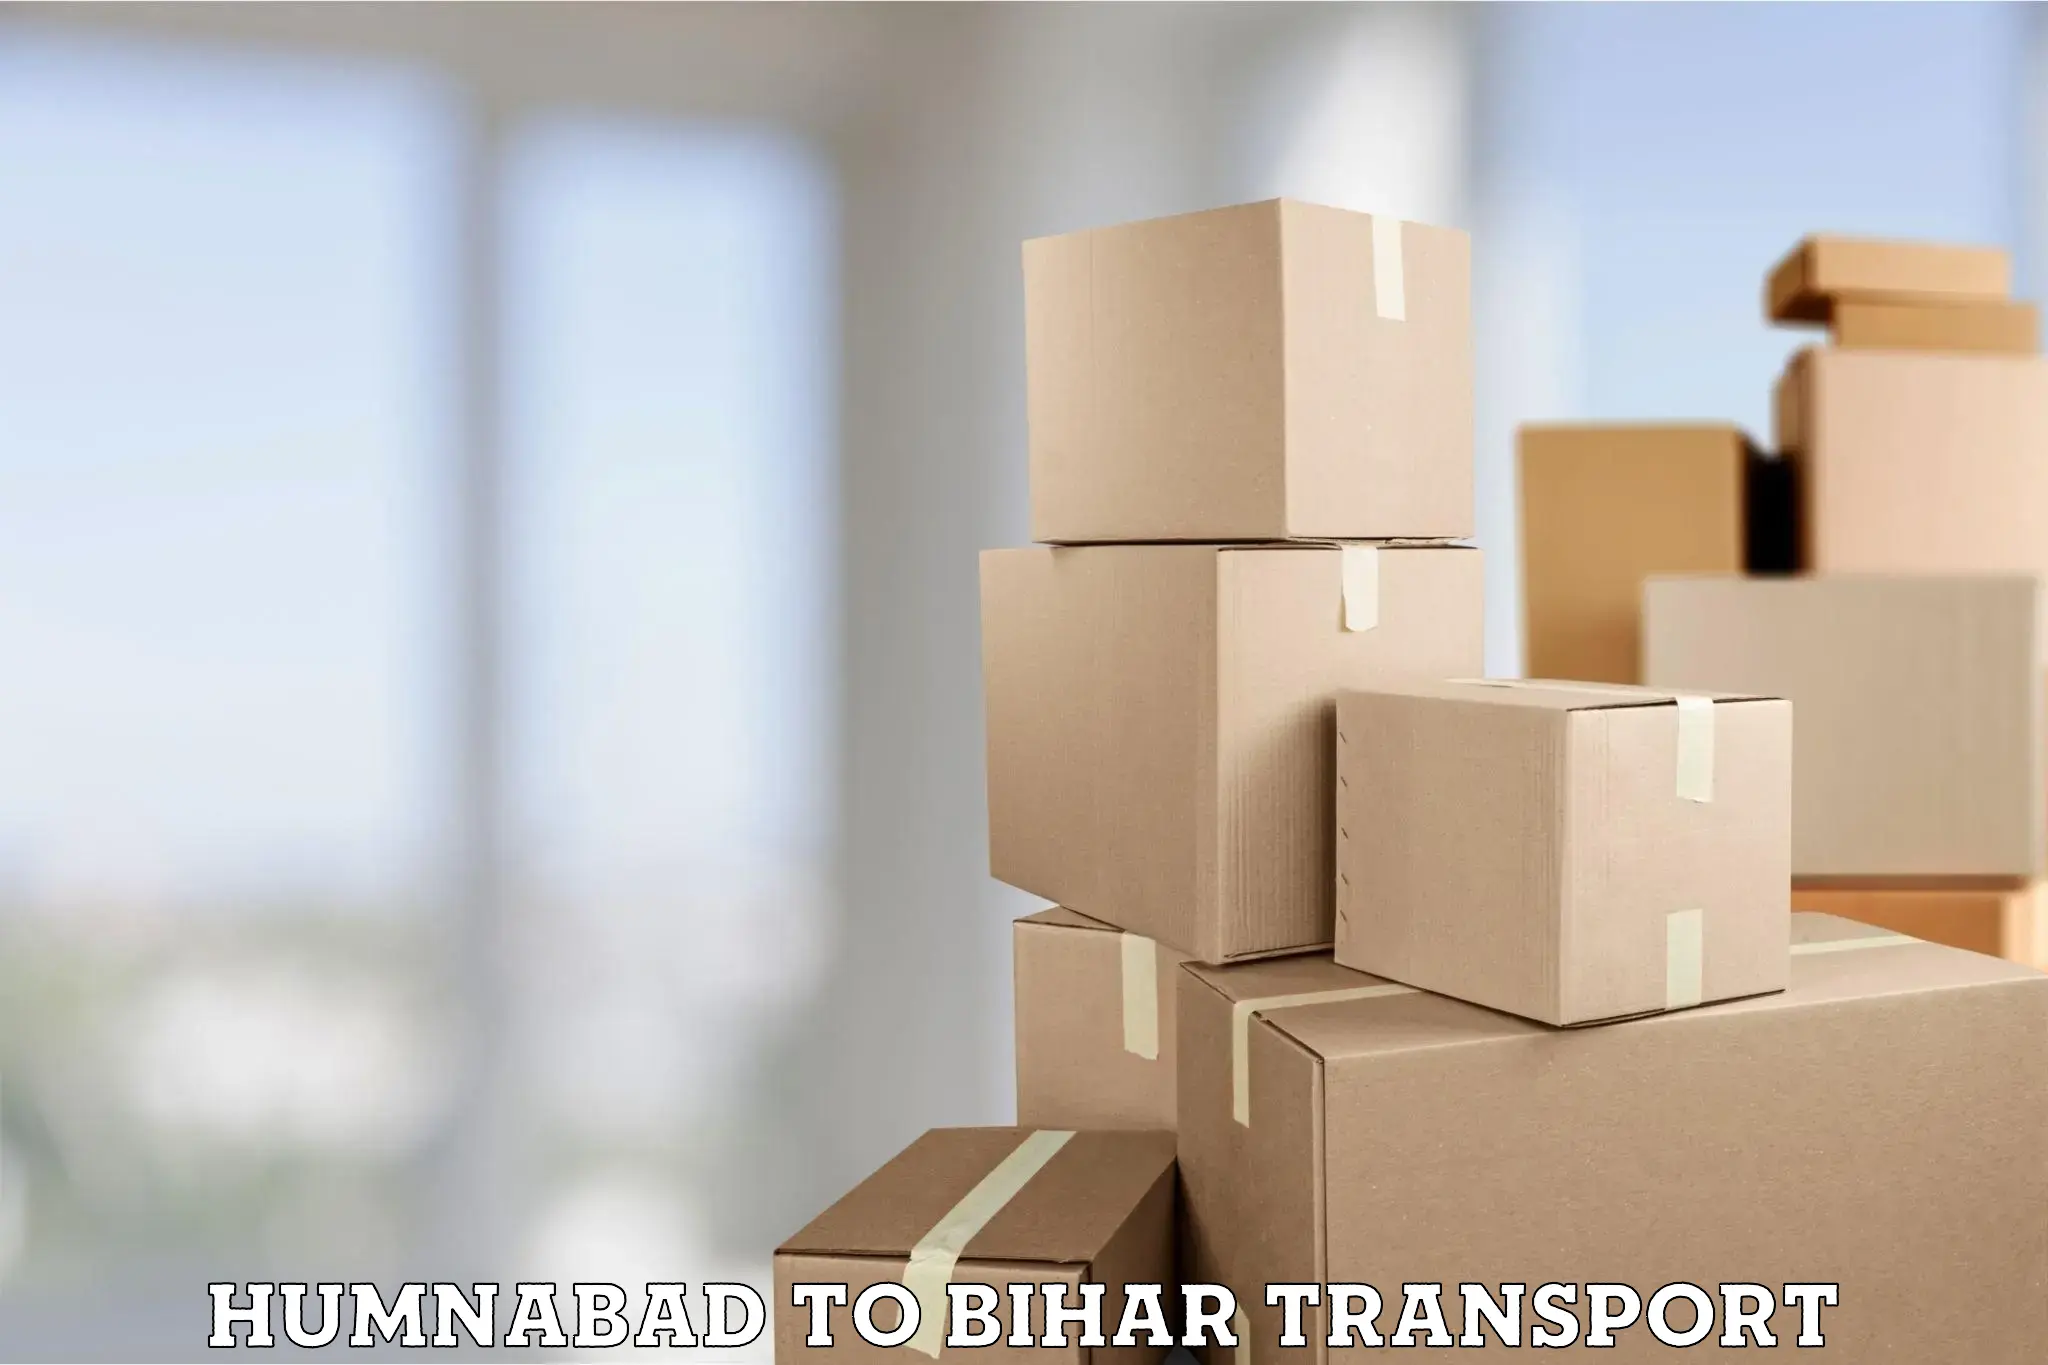 Furniture transport service Humnabad to Bihar